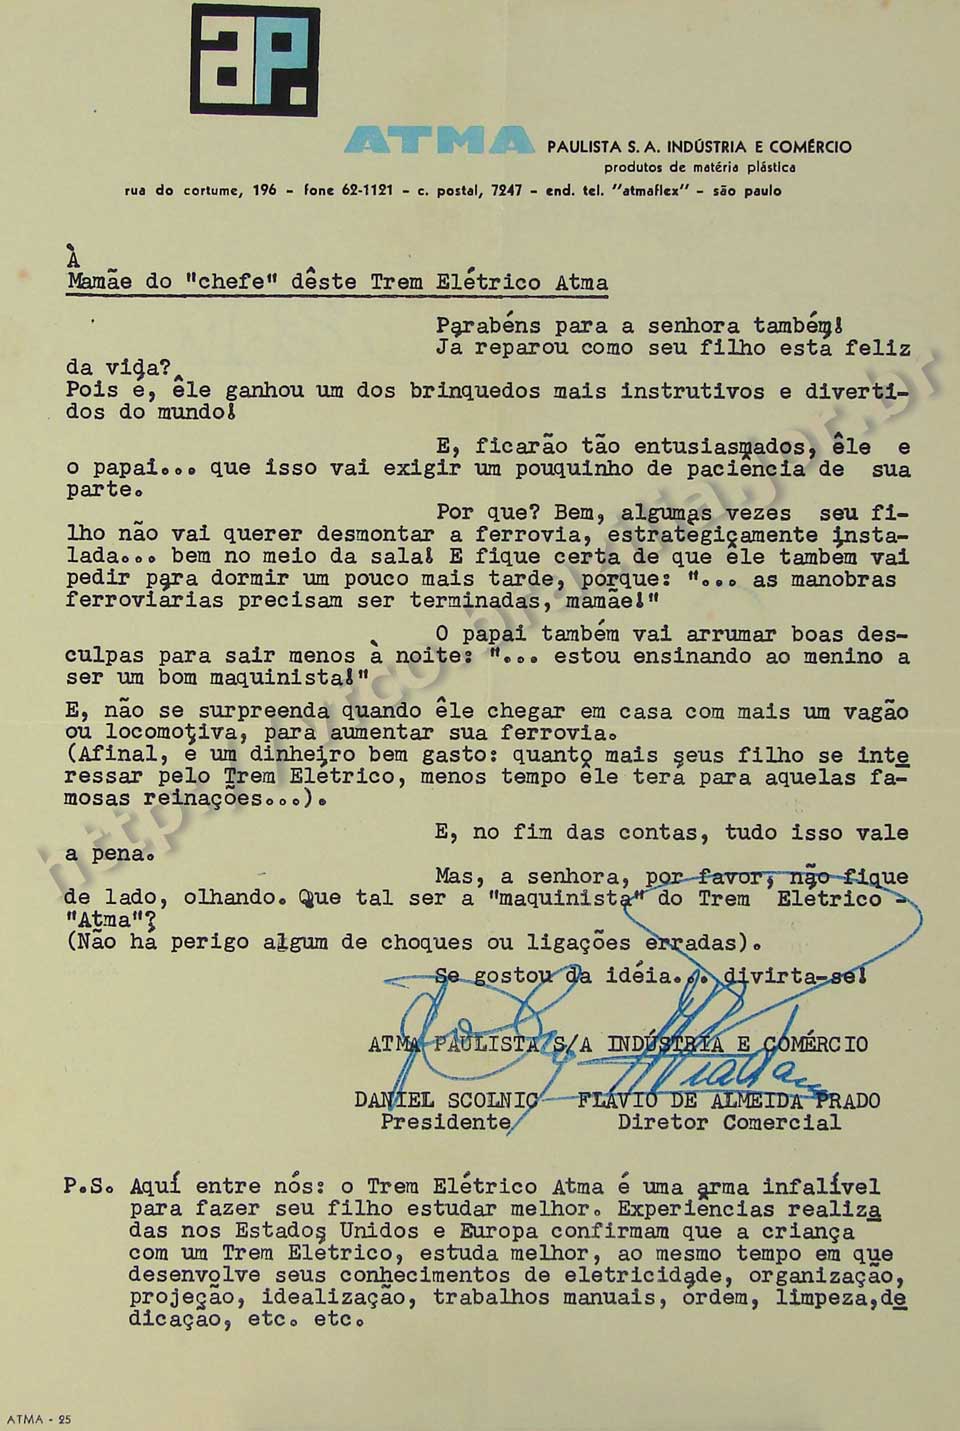 Carta à mamãe do "chefe" do Trem Elétrico Atma, incluída na embalagem do conjunto de ferreomodelismo